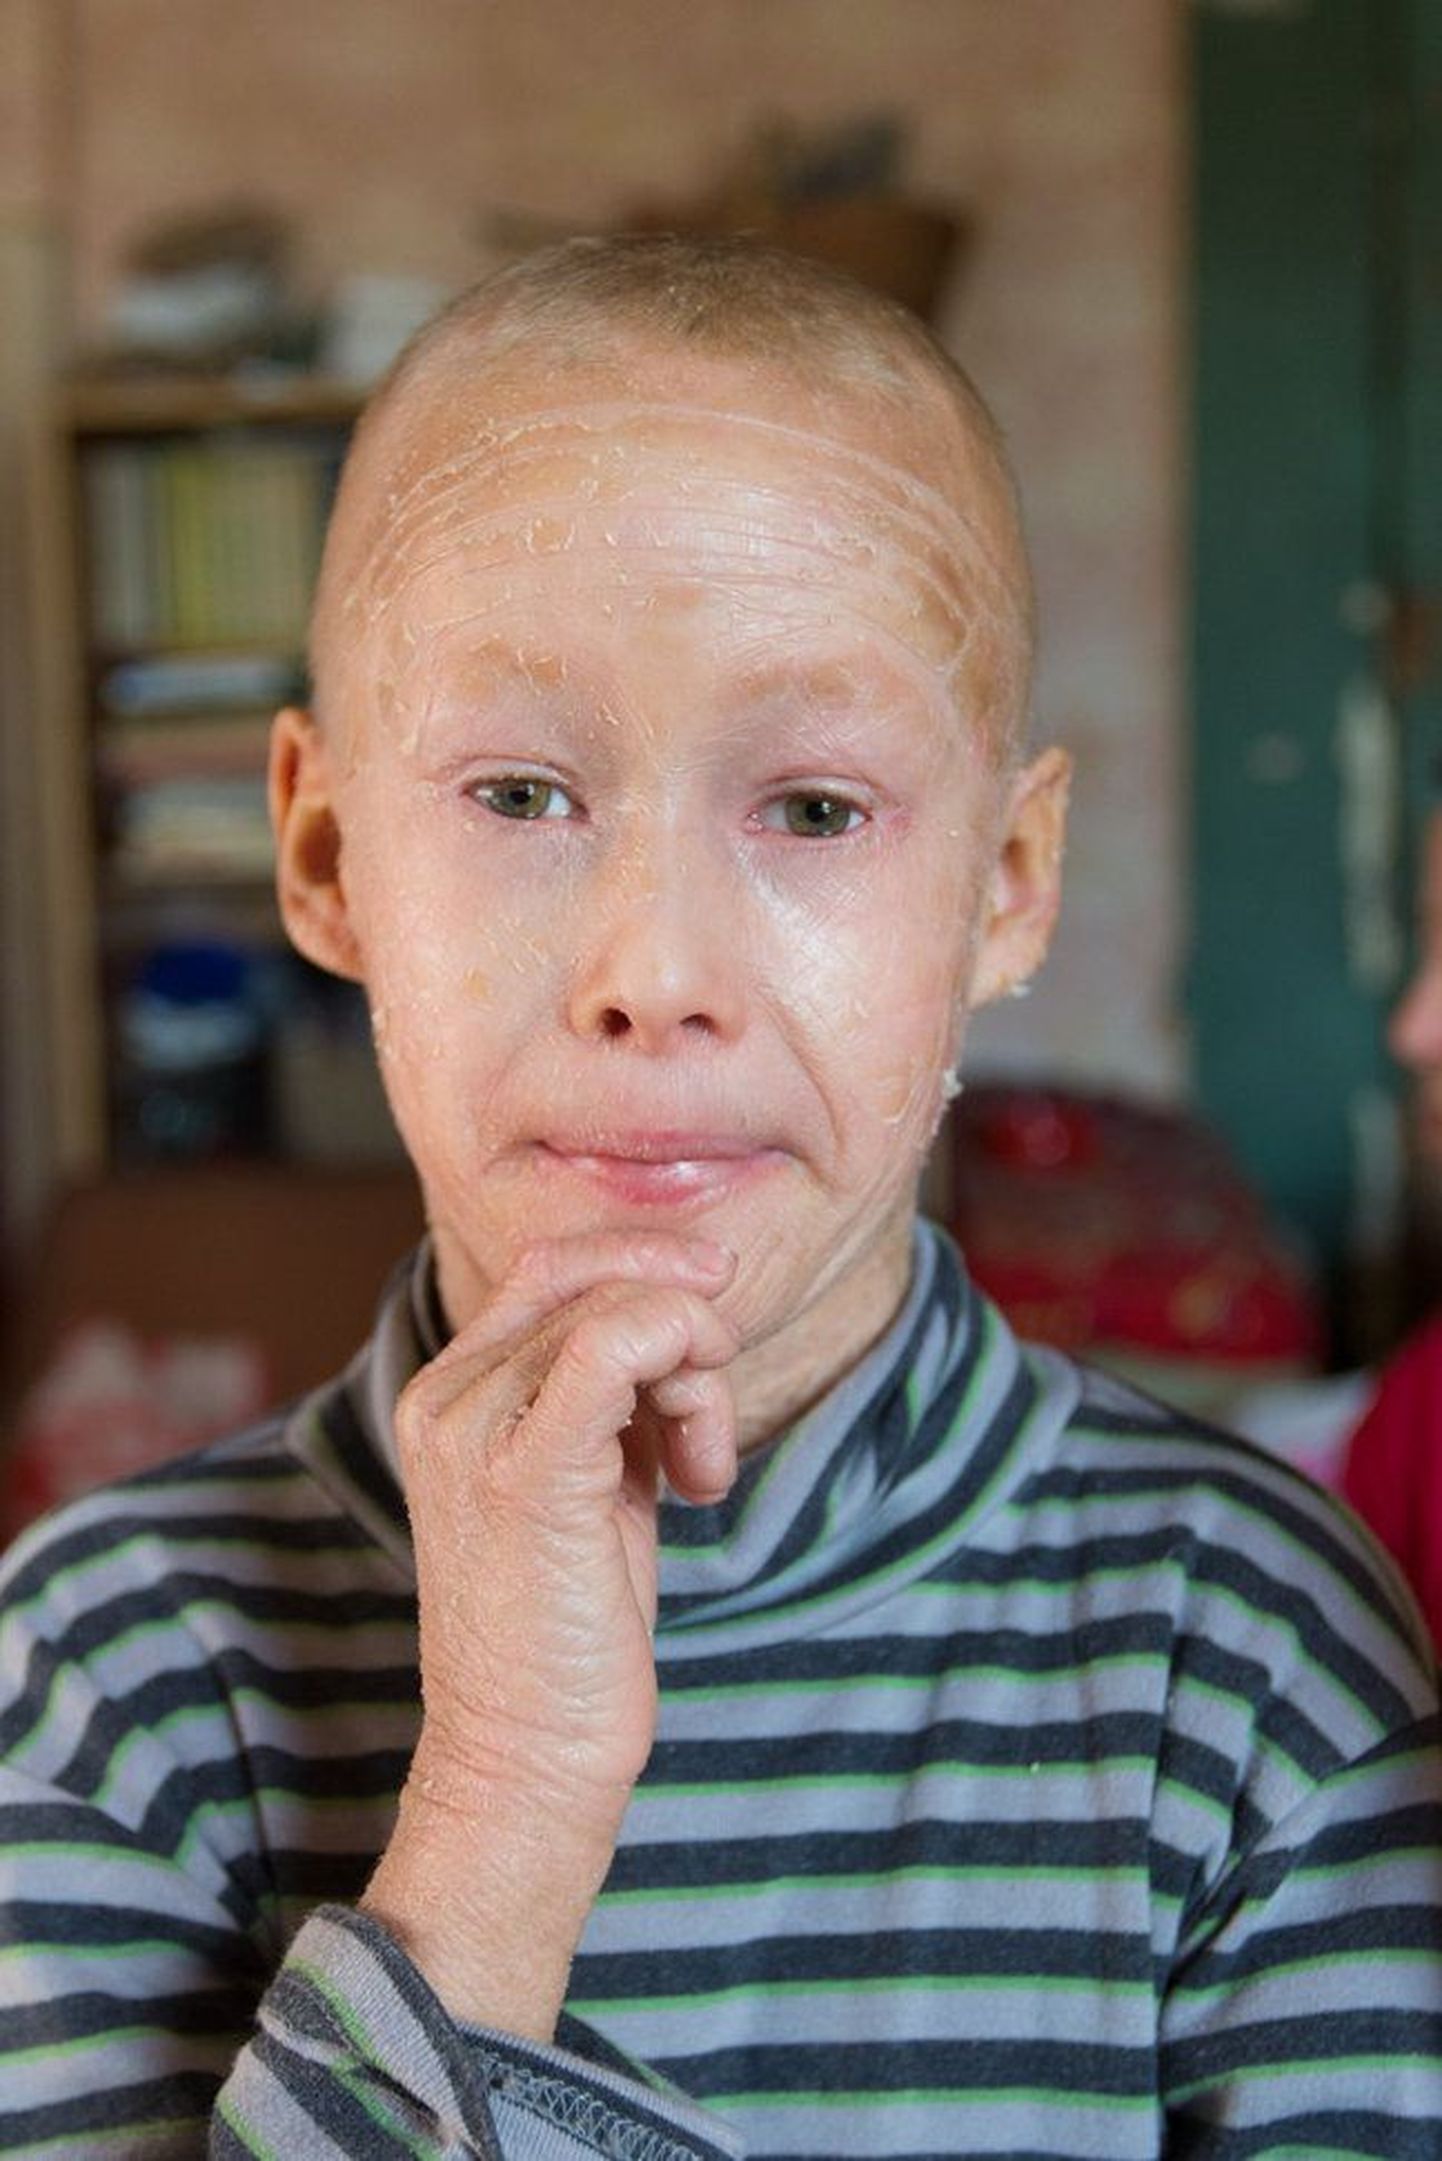 Восьмилетний Кайдо из Валгамаа, страдающий ихтиозом